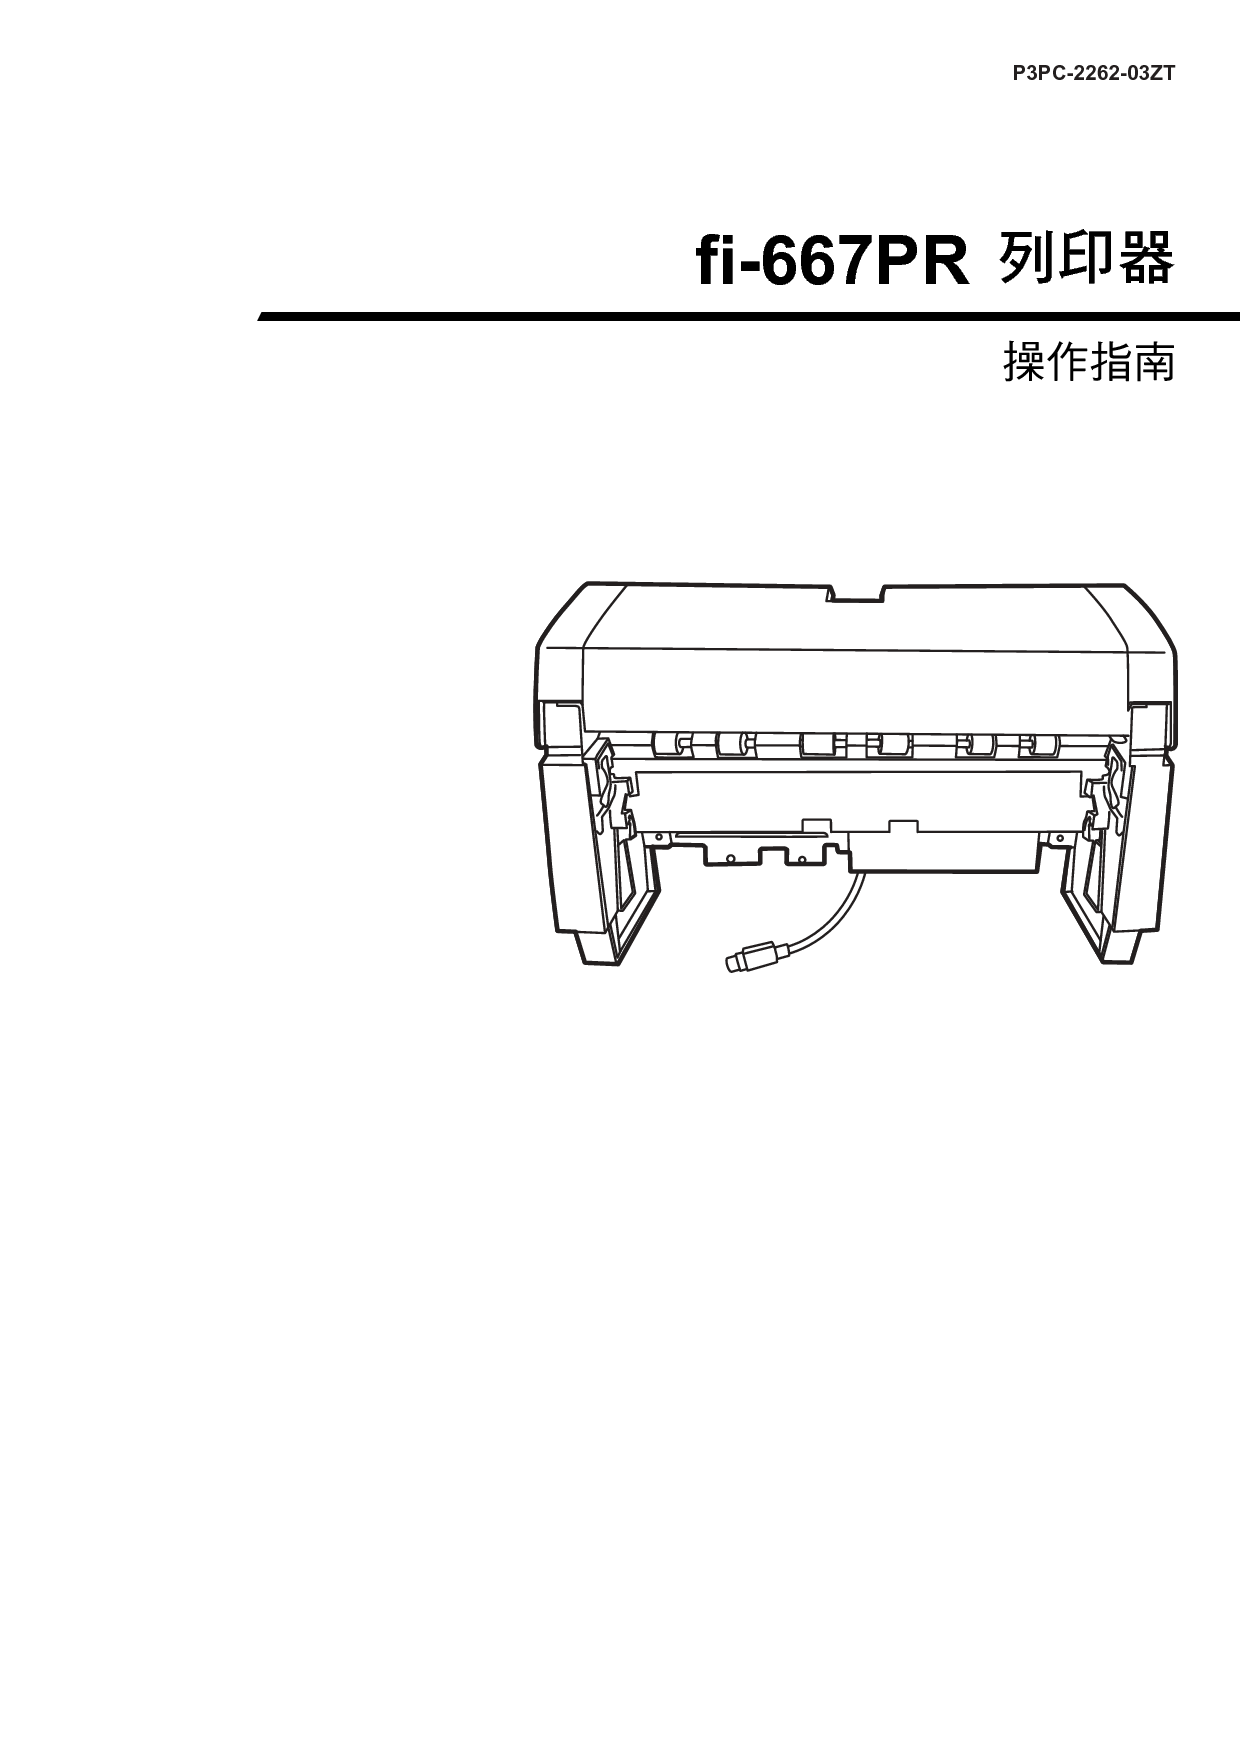 富士通 Fujitsu fi-667PR 繁体 使用指南 封面